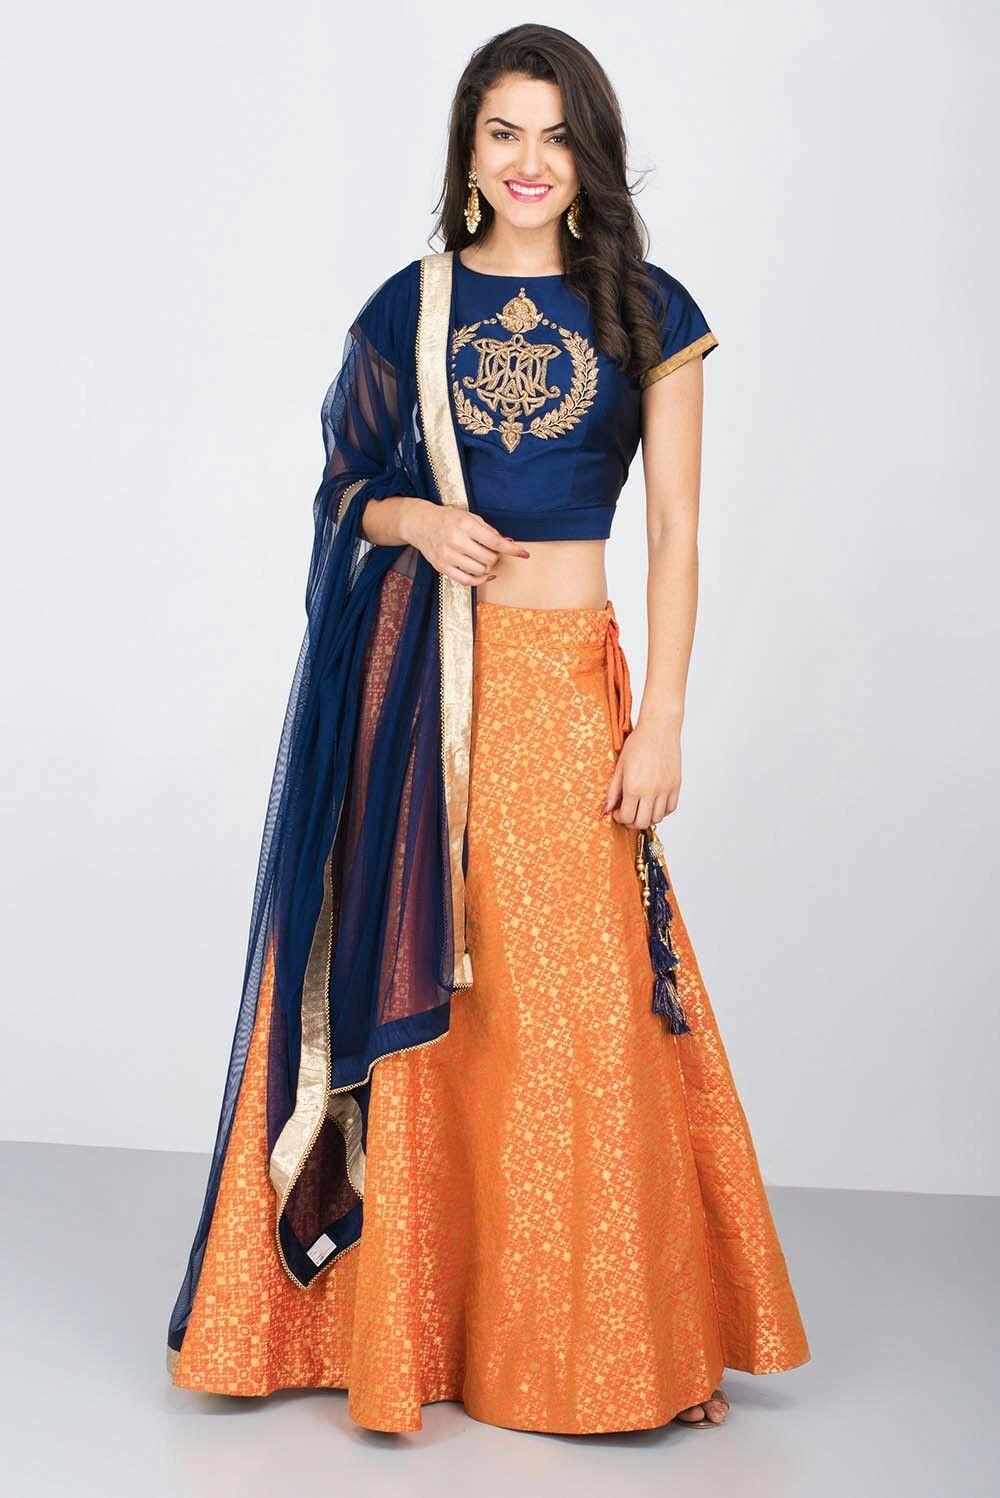 Orange and Blue Indian Logo - India's largest fashion rental service | Lehenga choli | Lehenga ...